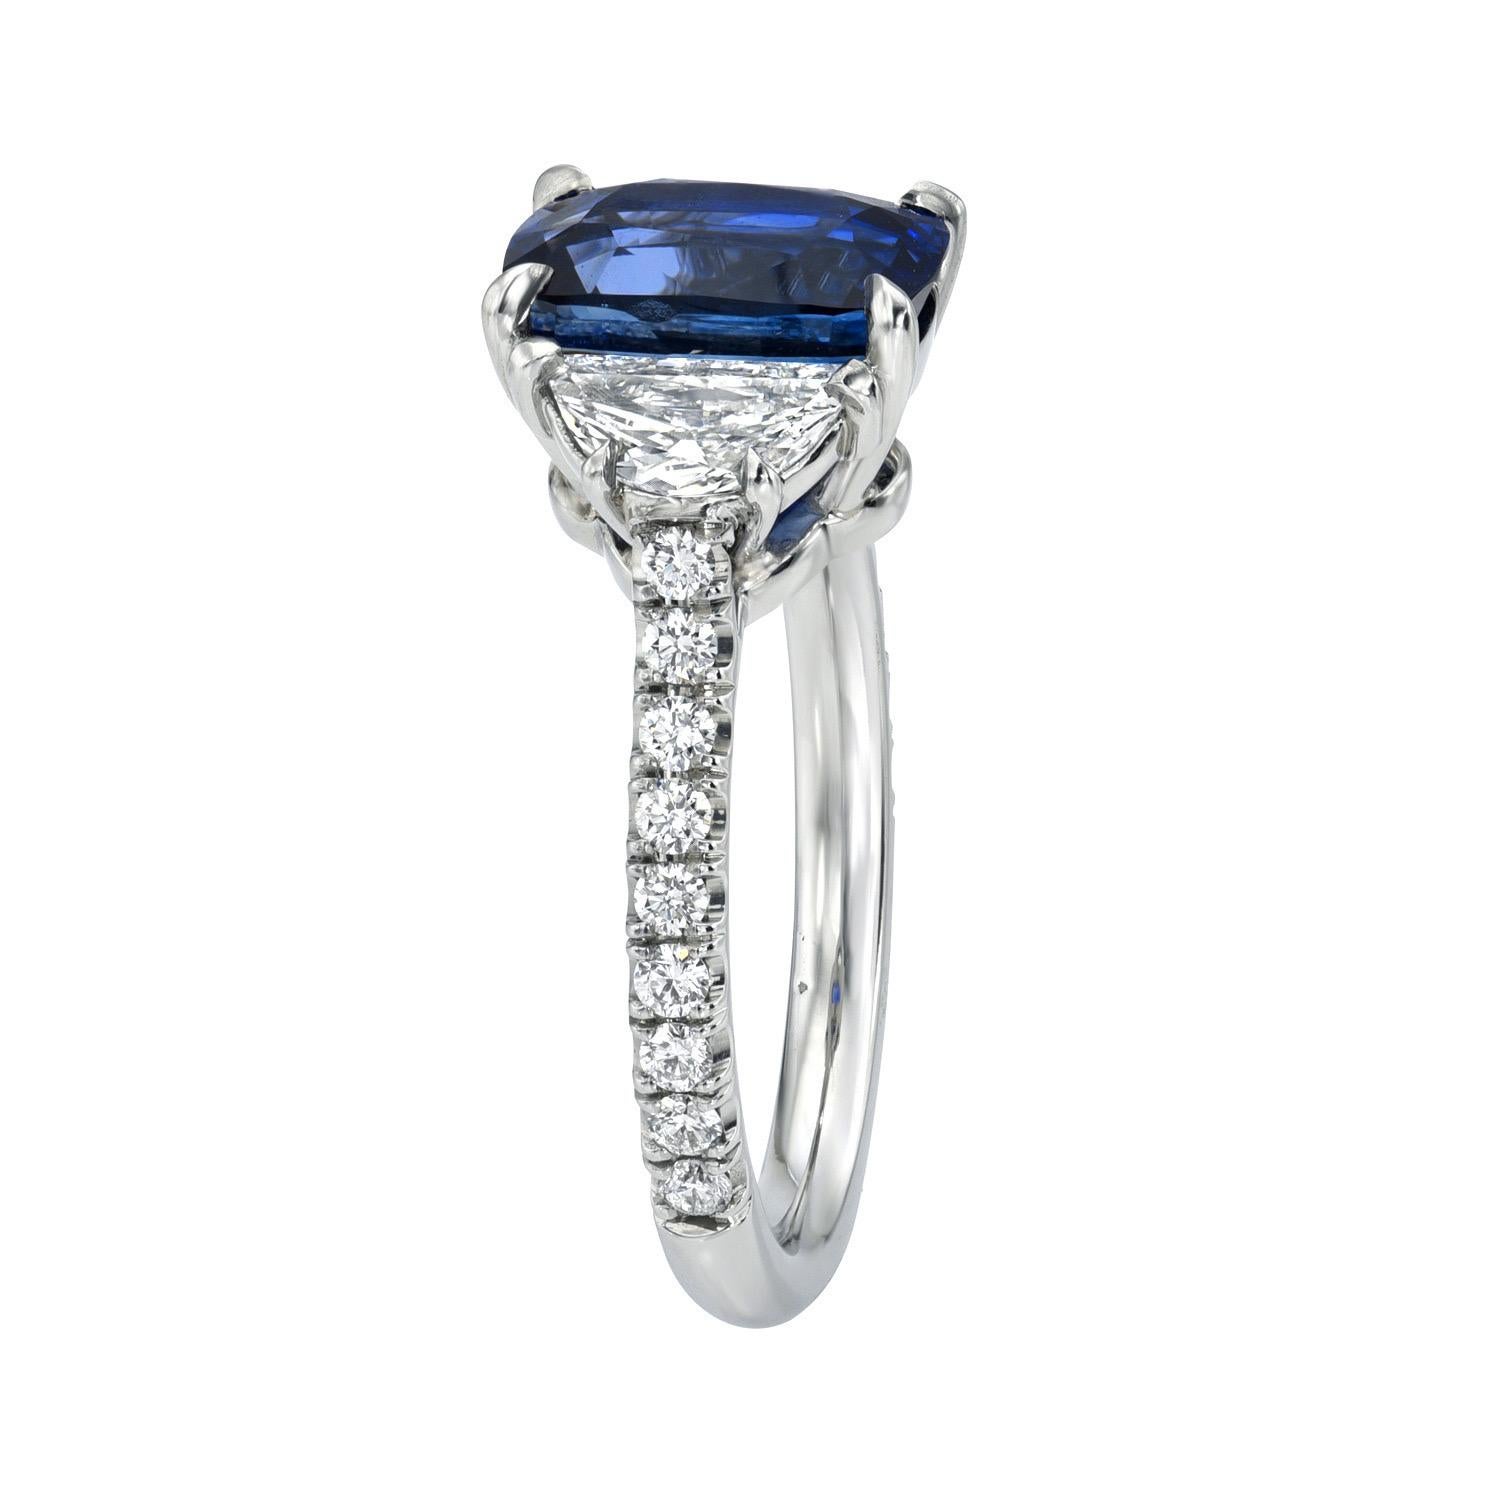 Bague intemporelle en platine à trois pierres et coussin en saphir bleu de Ceylan de 3,12 carats, flanquée d'une paire de diamants demi-lune de 0,47 carat, E/VS1 et d'un total de 0,28 carat de diamants ronds de taille brillant.
Bague taille 6. Le